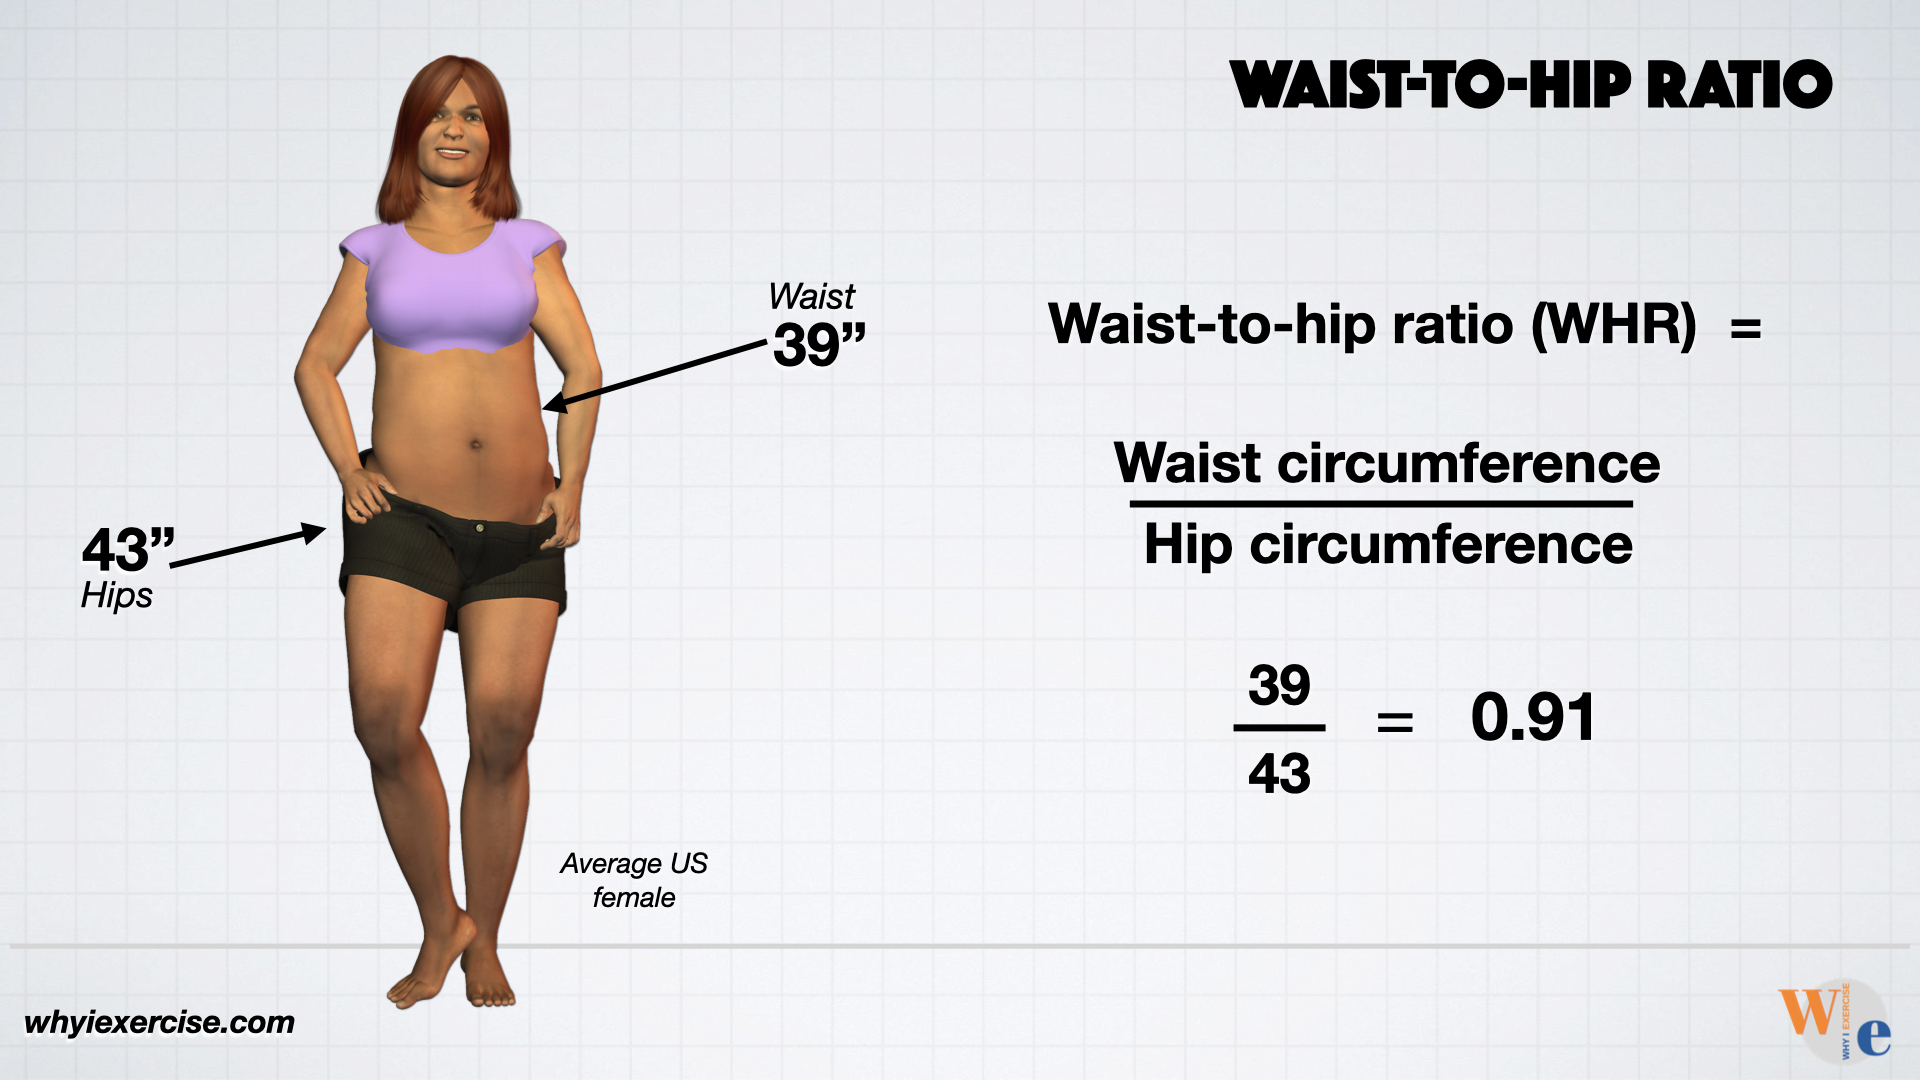 Maintaining a healthy waist-to-hip ratio